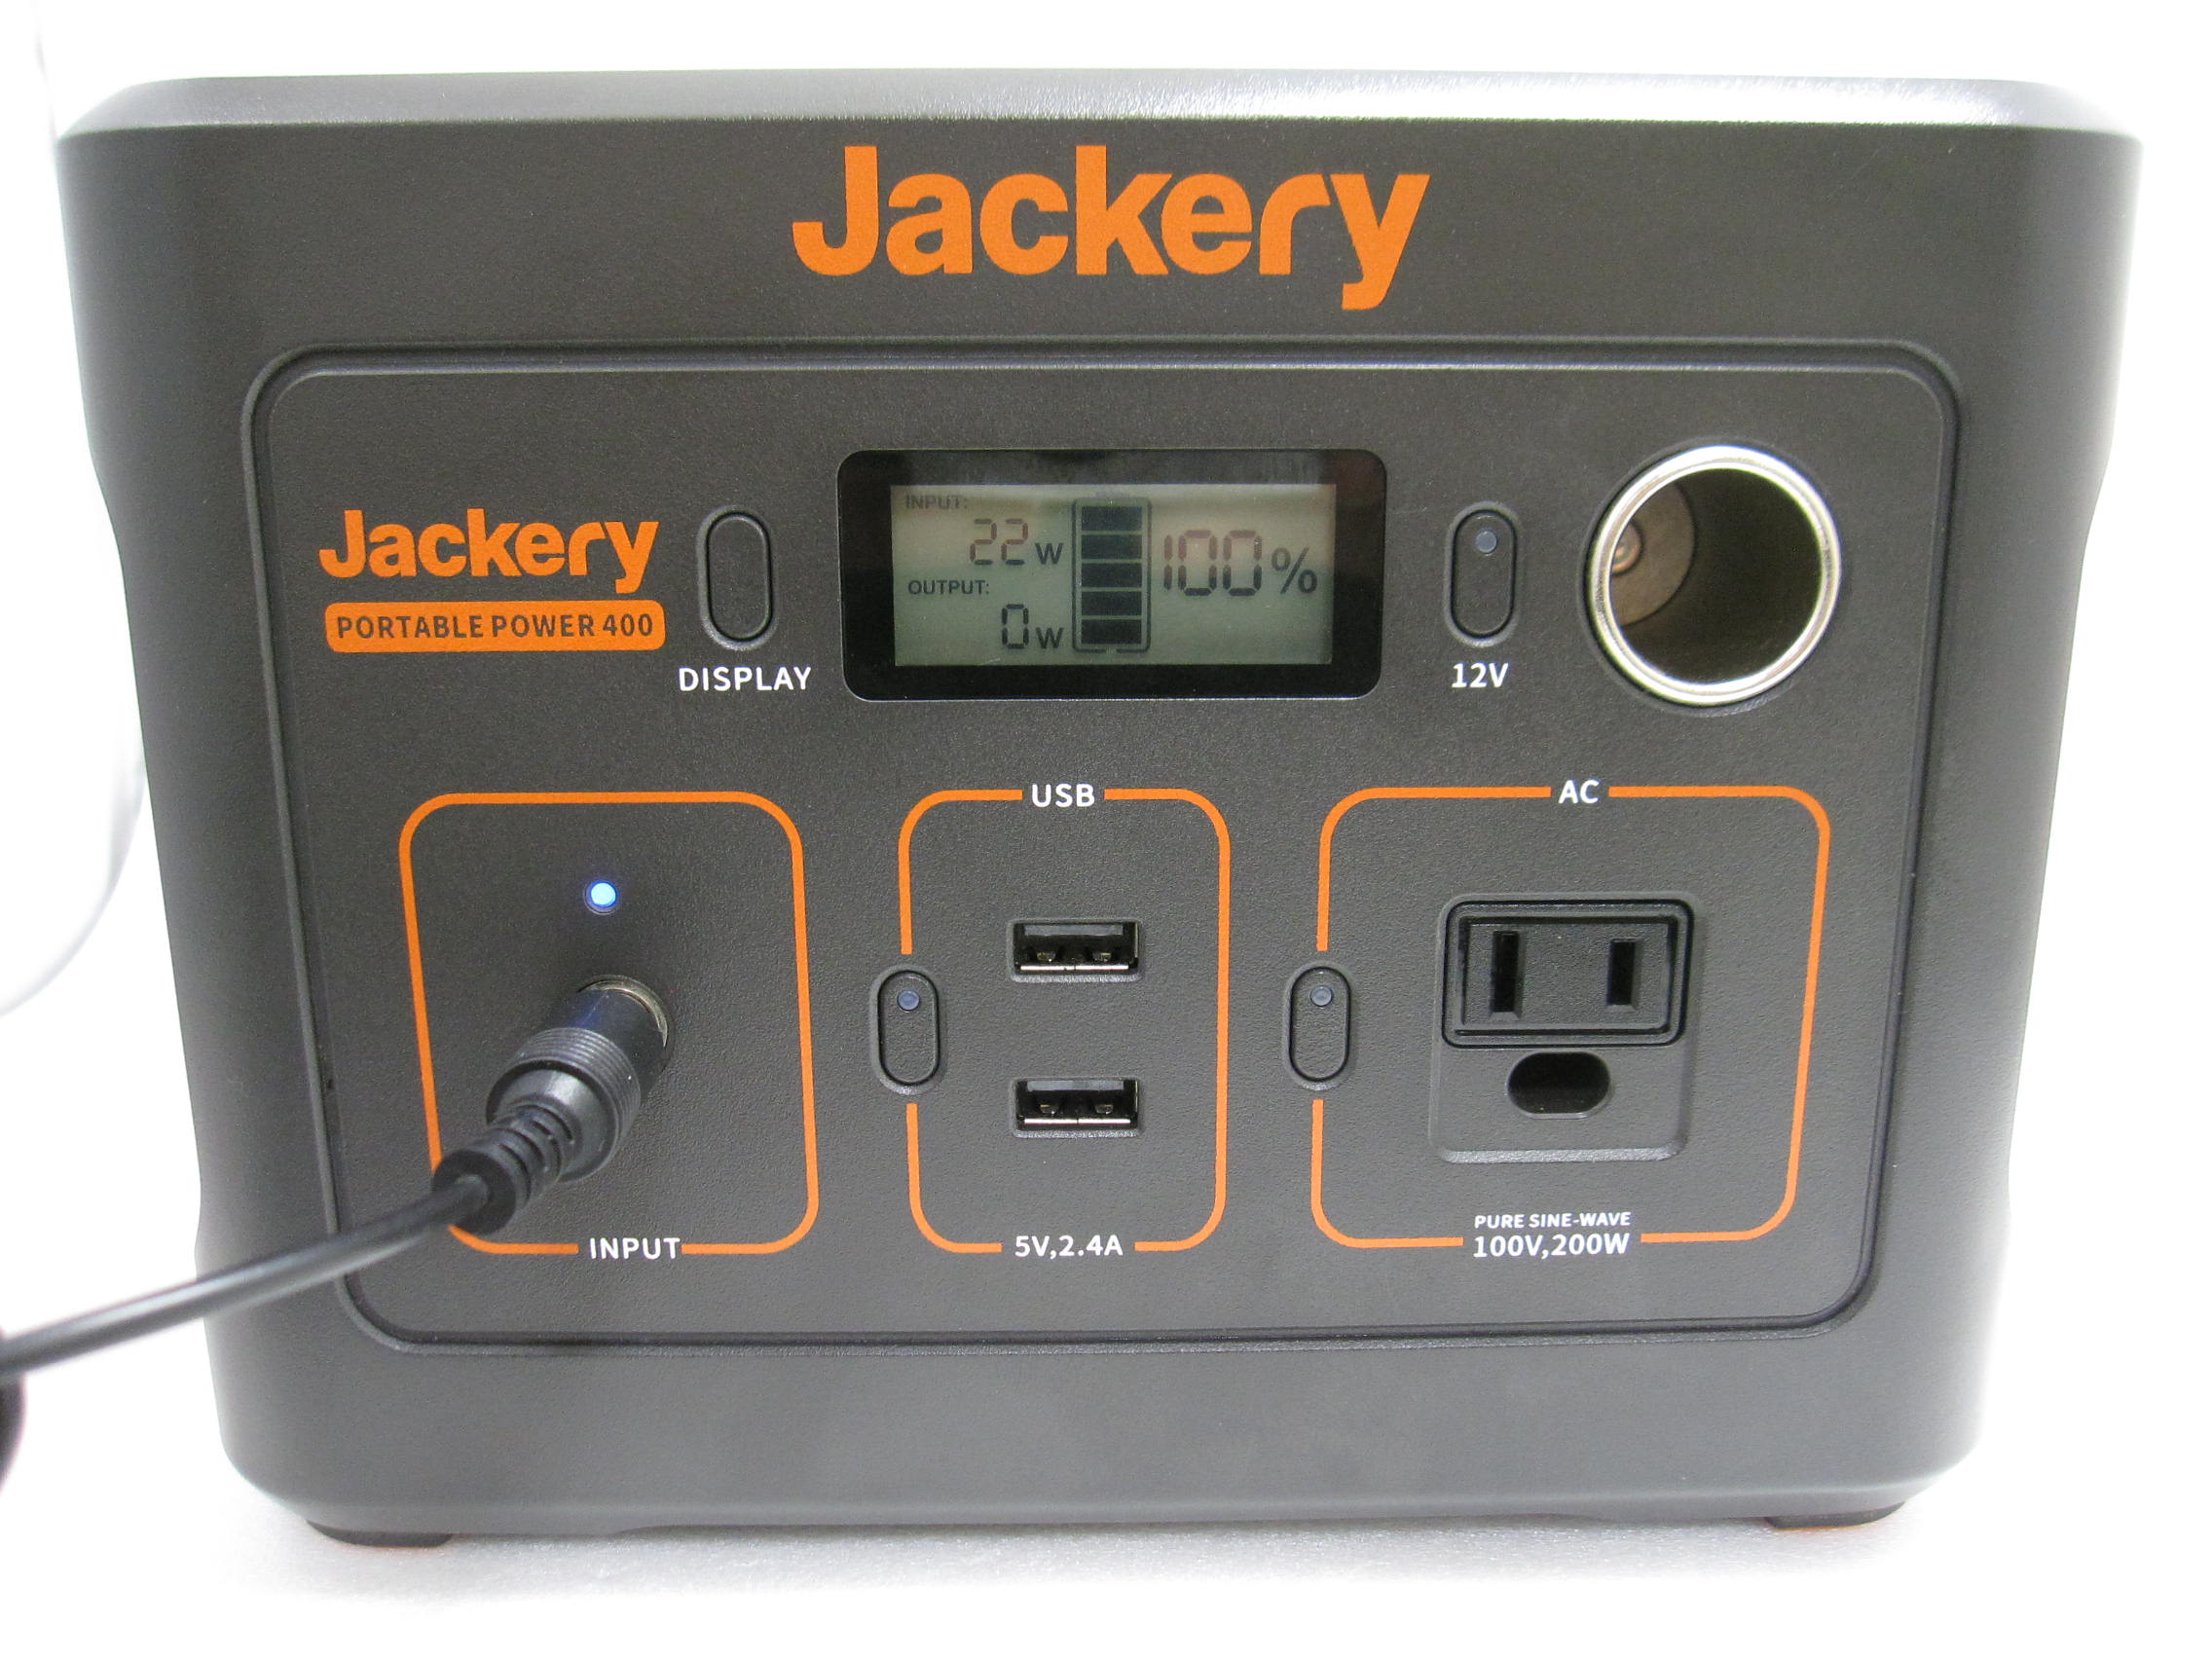 【防災・アウトドア】Jackery ジャクリ ポータブル電源 400 28.05Ah/14.4V(403Wh) / 買取専門 金沢買取プラザ